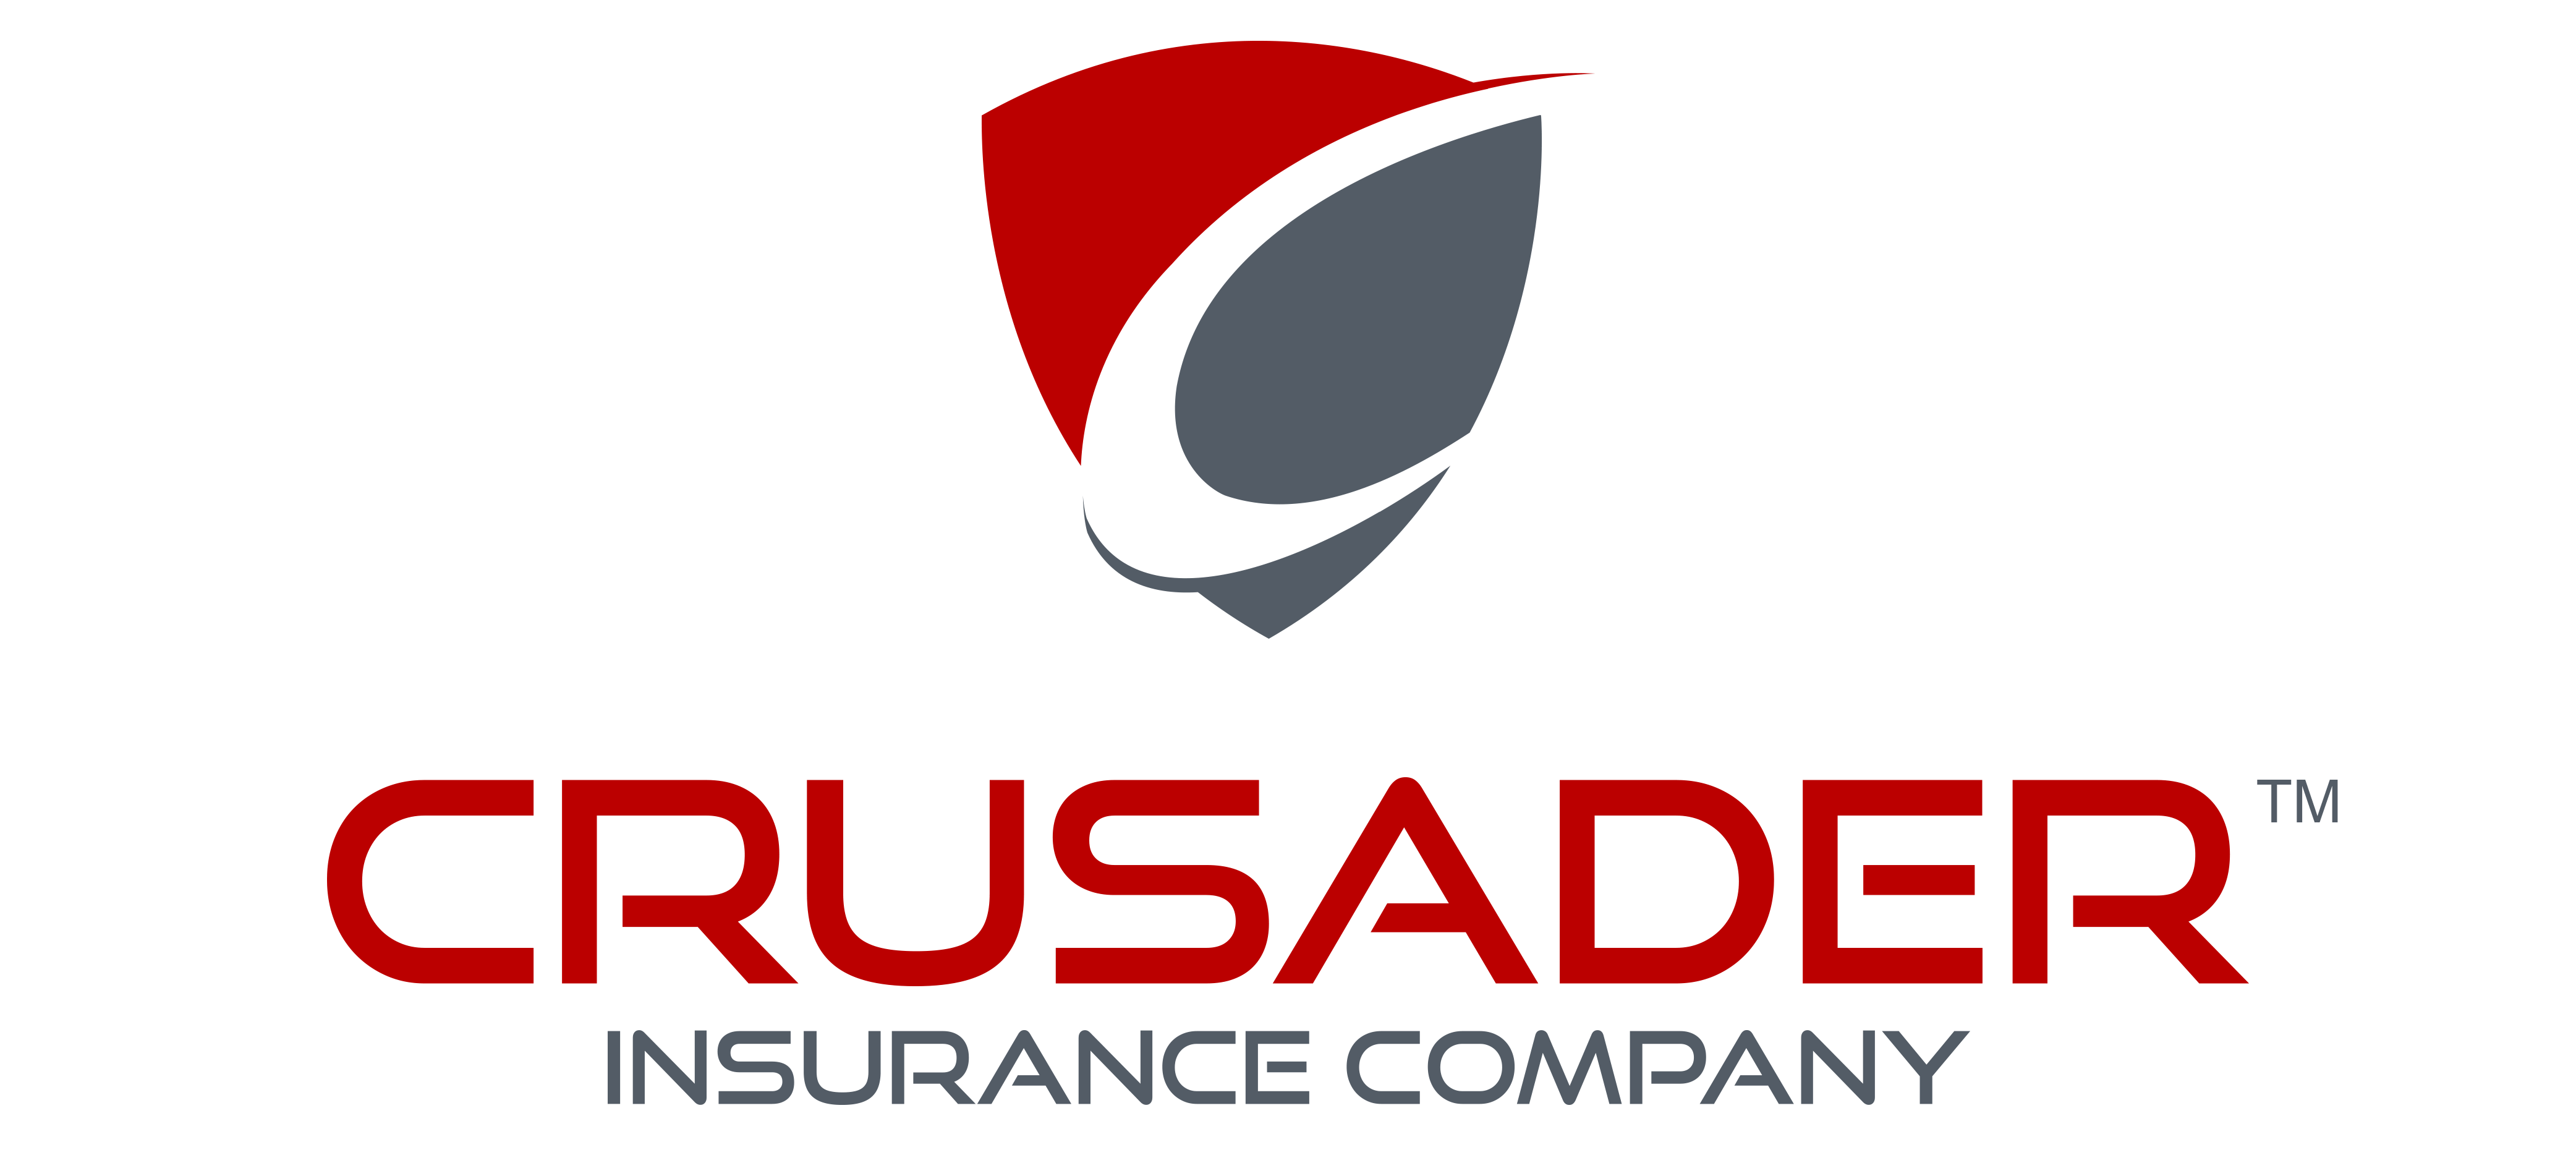 Cusader Logo - Crusader Logo With TM - Crusader Insurance